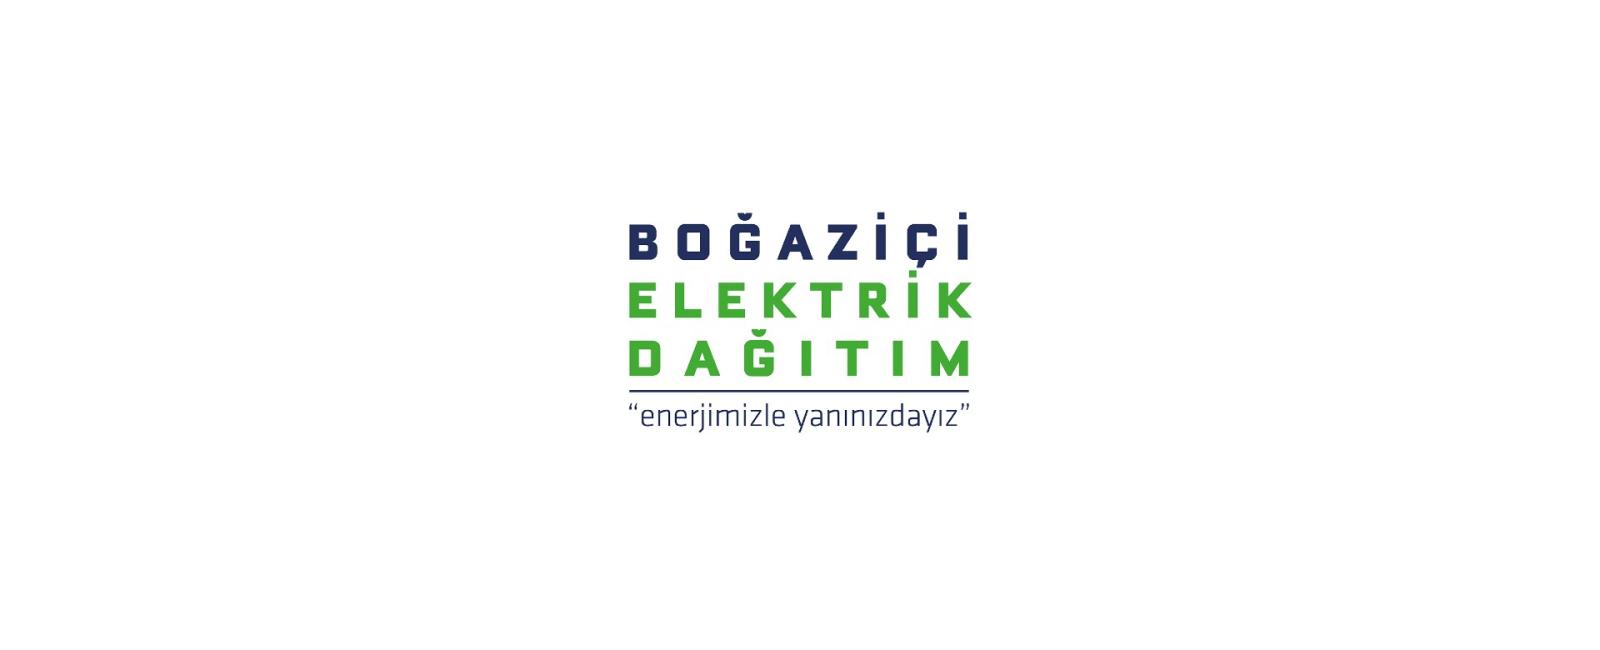 شركة الكهرباء في اسطنبول BEDAŞ